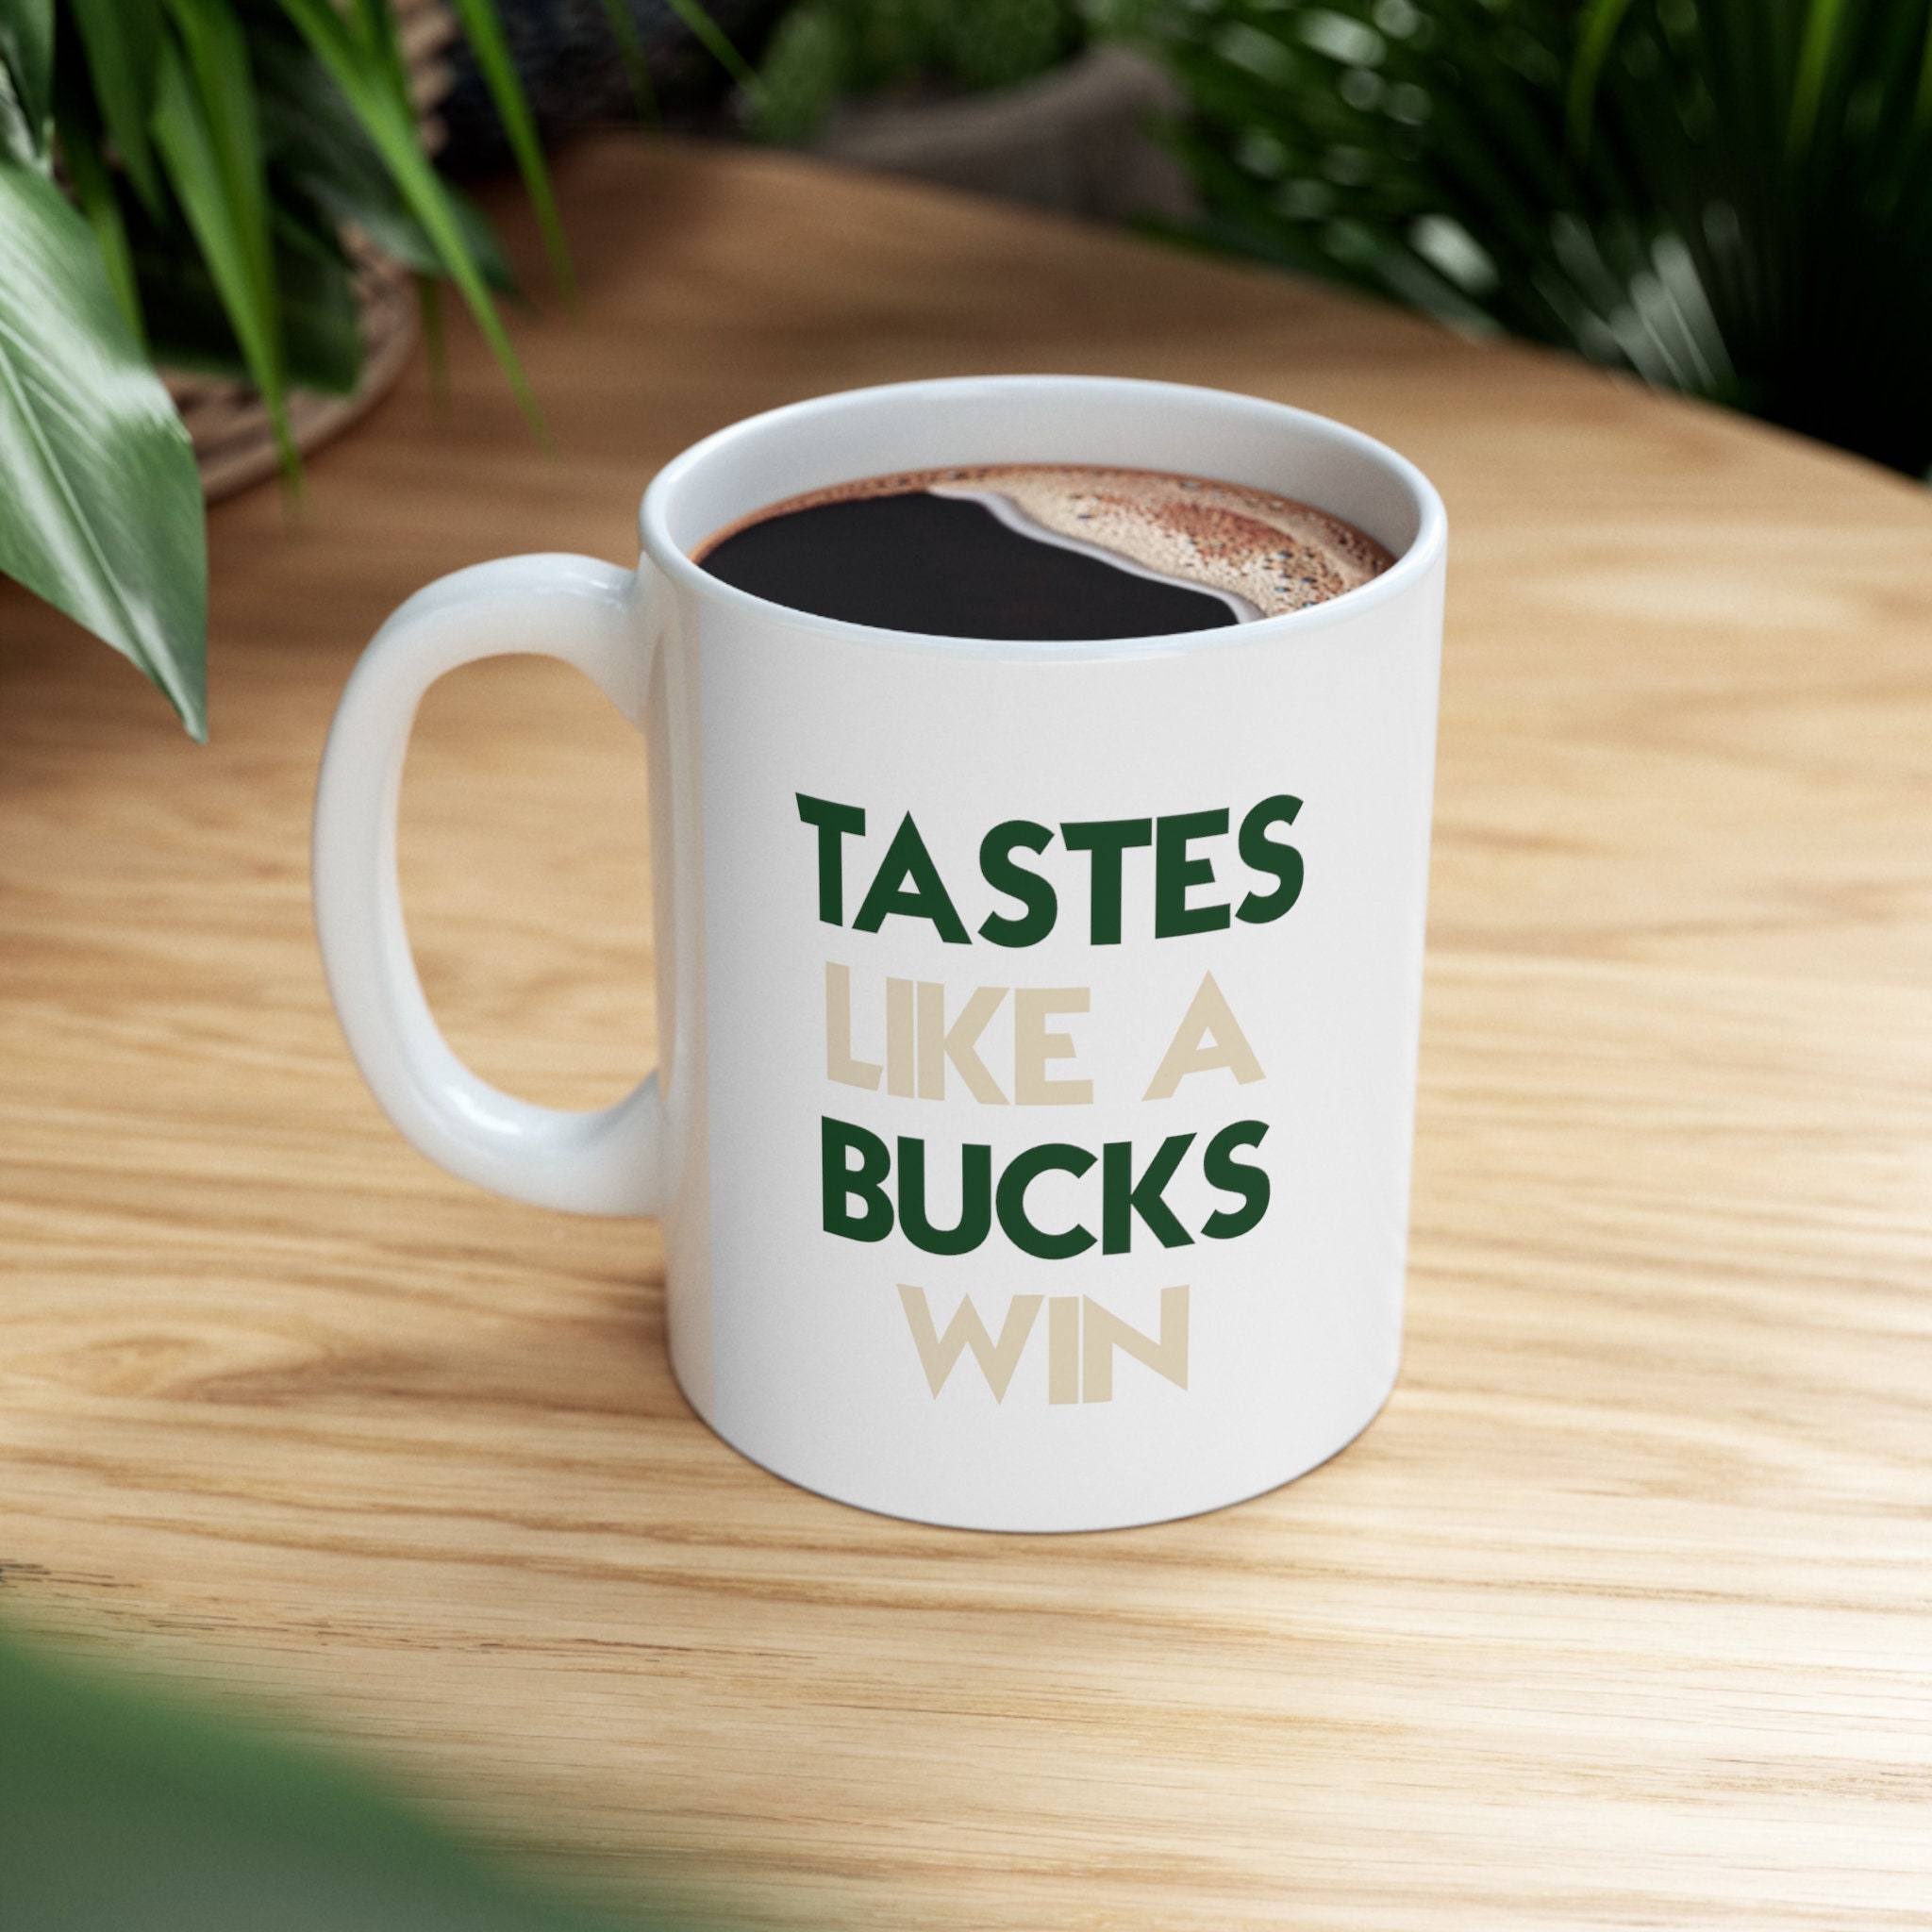 Giannis Antetokounmpo Milwaukee Bucks Coffee Mug by Afrio Adistira - Pixels